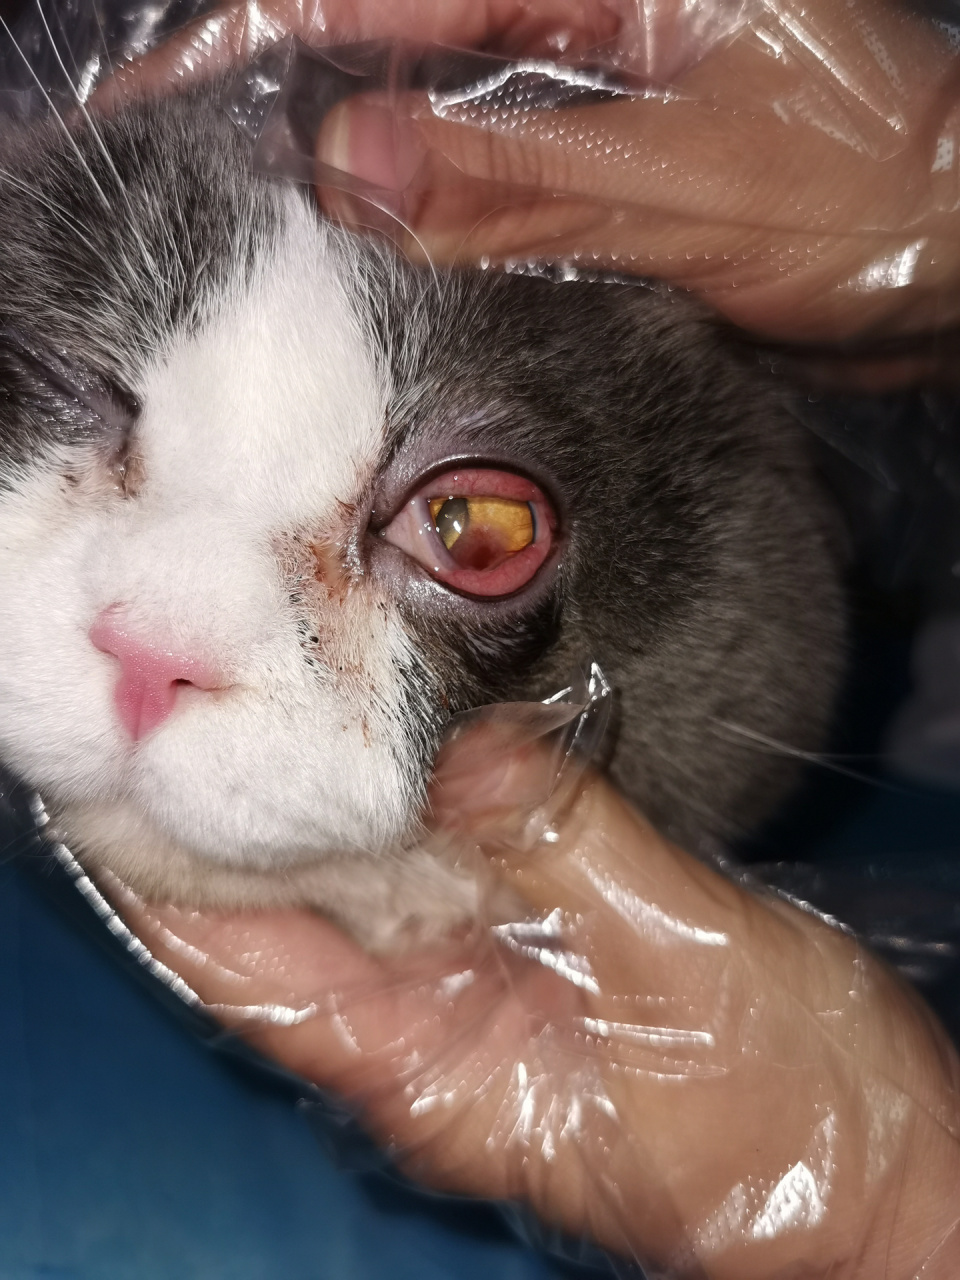 分享猫咪角膜溃疡治疗过程 大头病情:角膜炎 角膜溃疡  滴药顺序:1